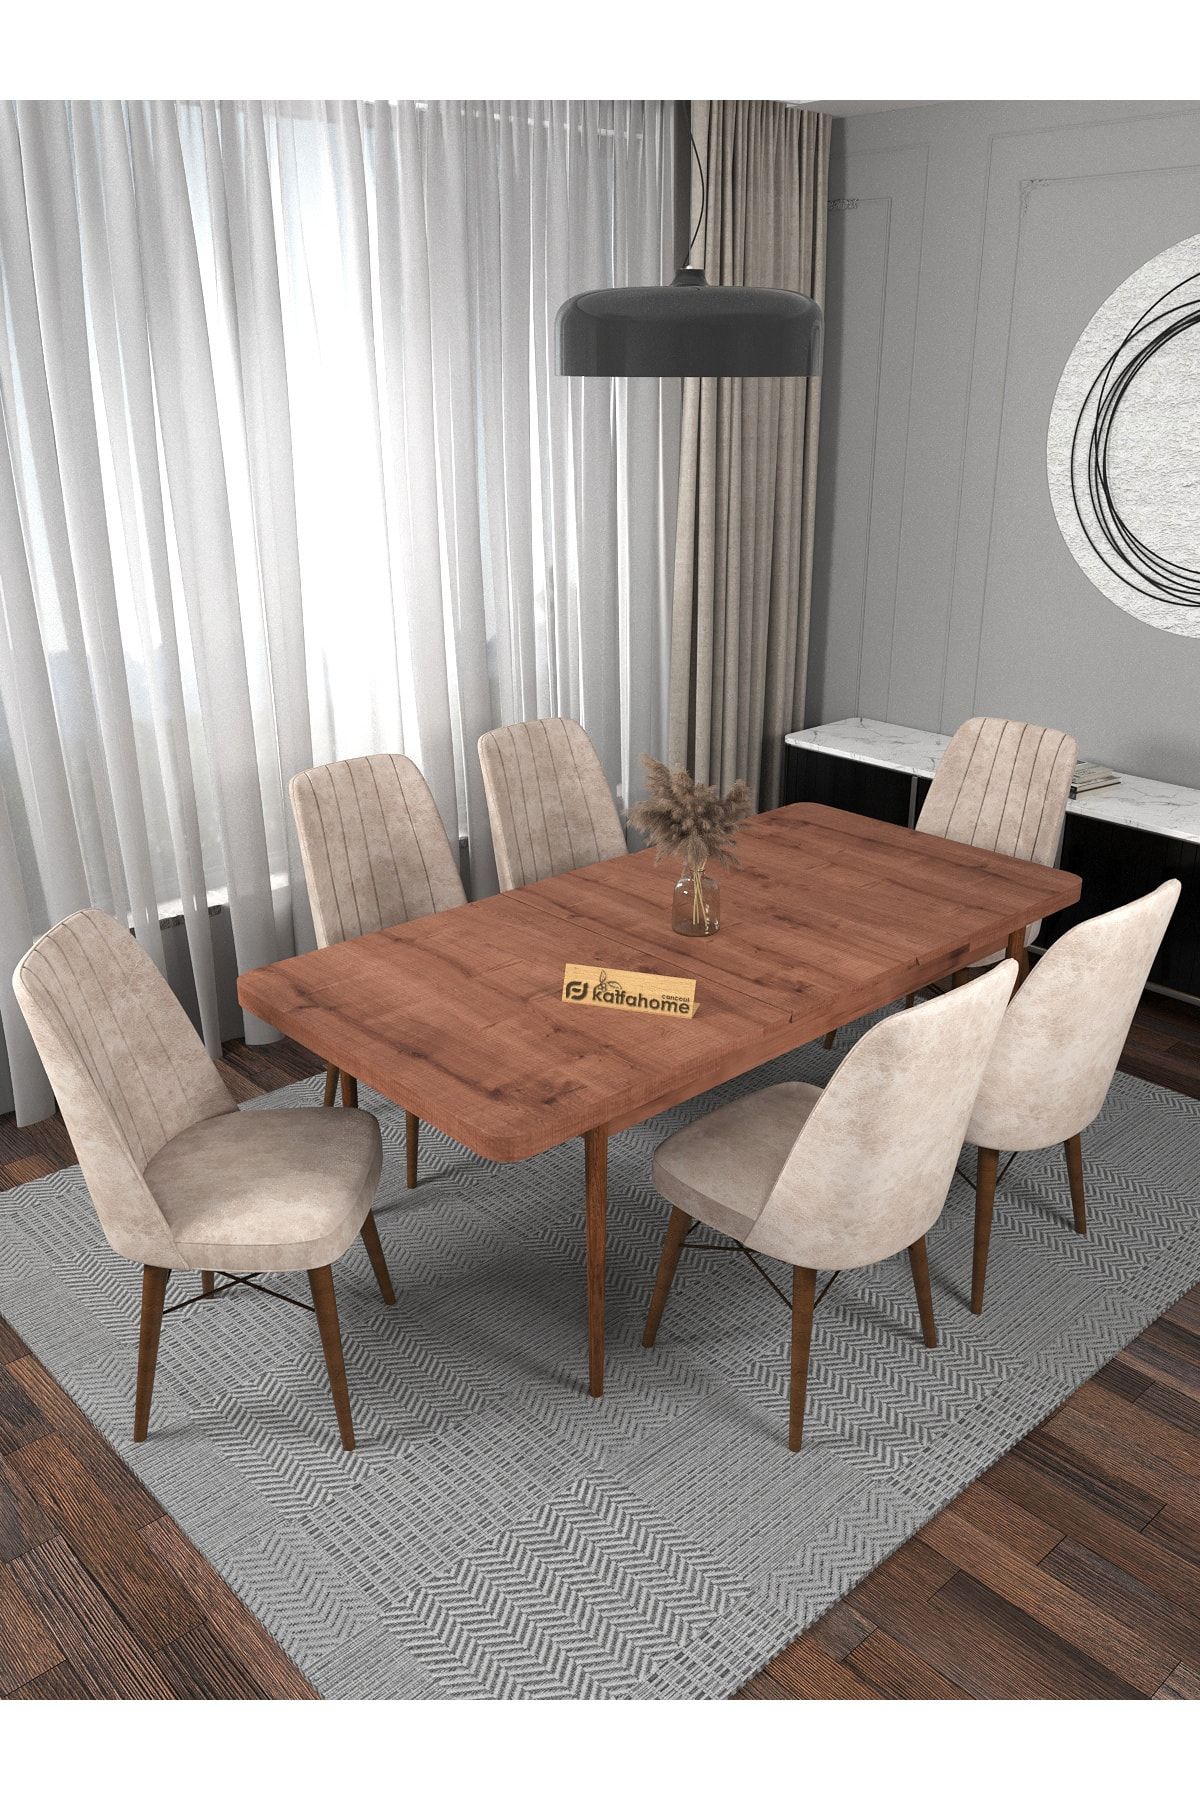 Kaffahome Riff Sümela 80x130 Cm , 6 Kişilik Açılabilir Masa Sandalye Takımı , Mutfak Masa Takımı - Krem